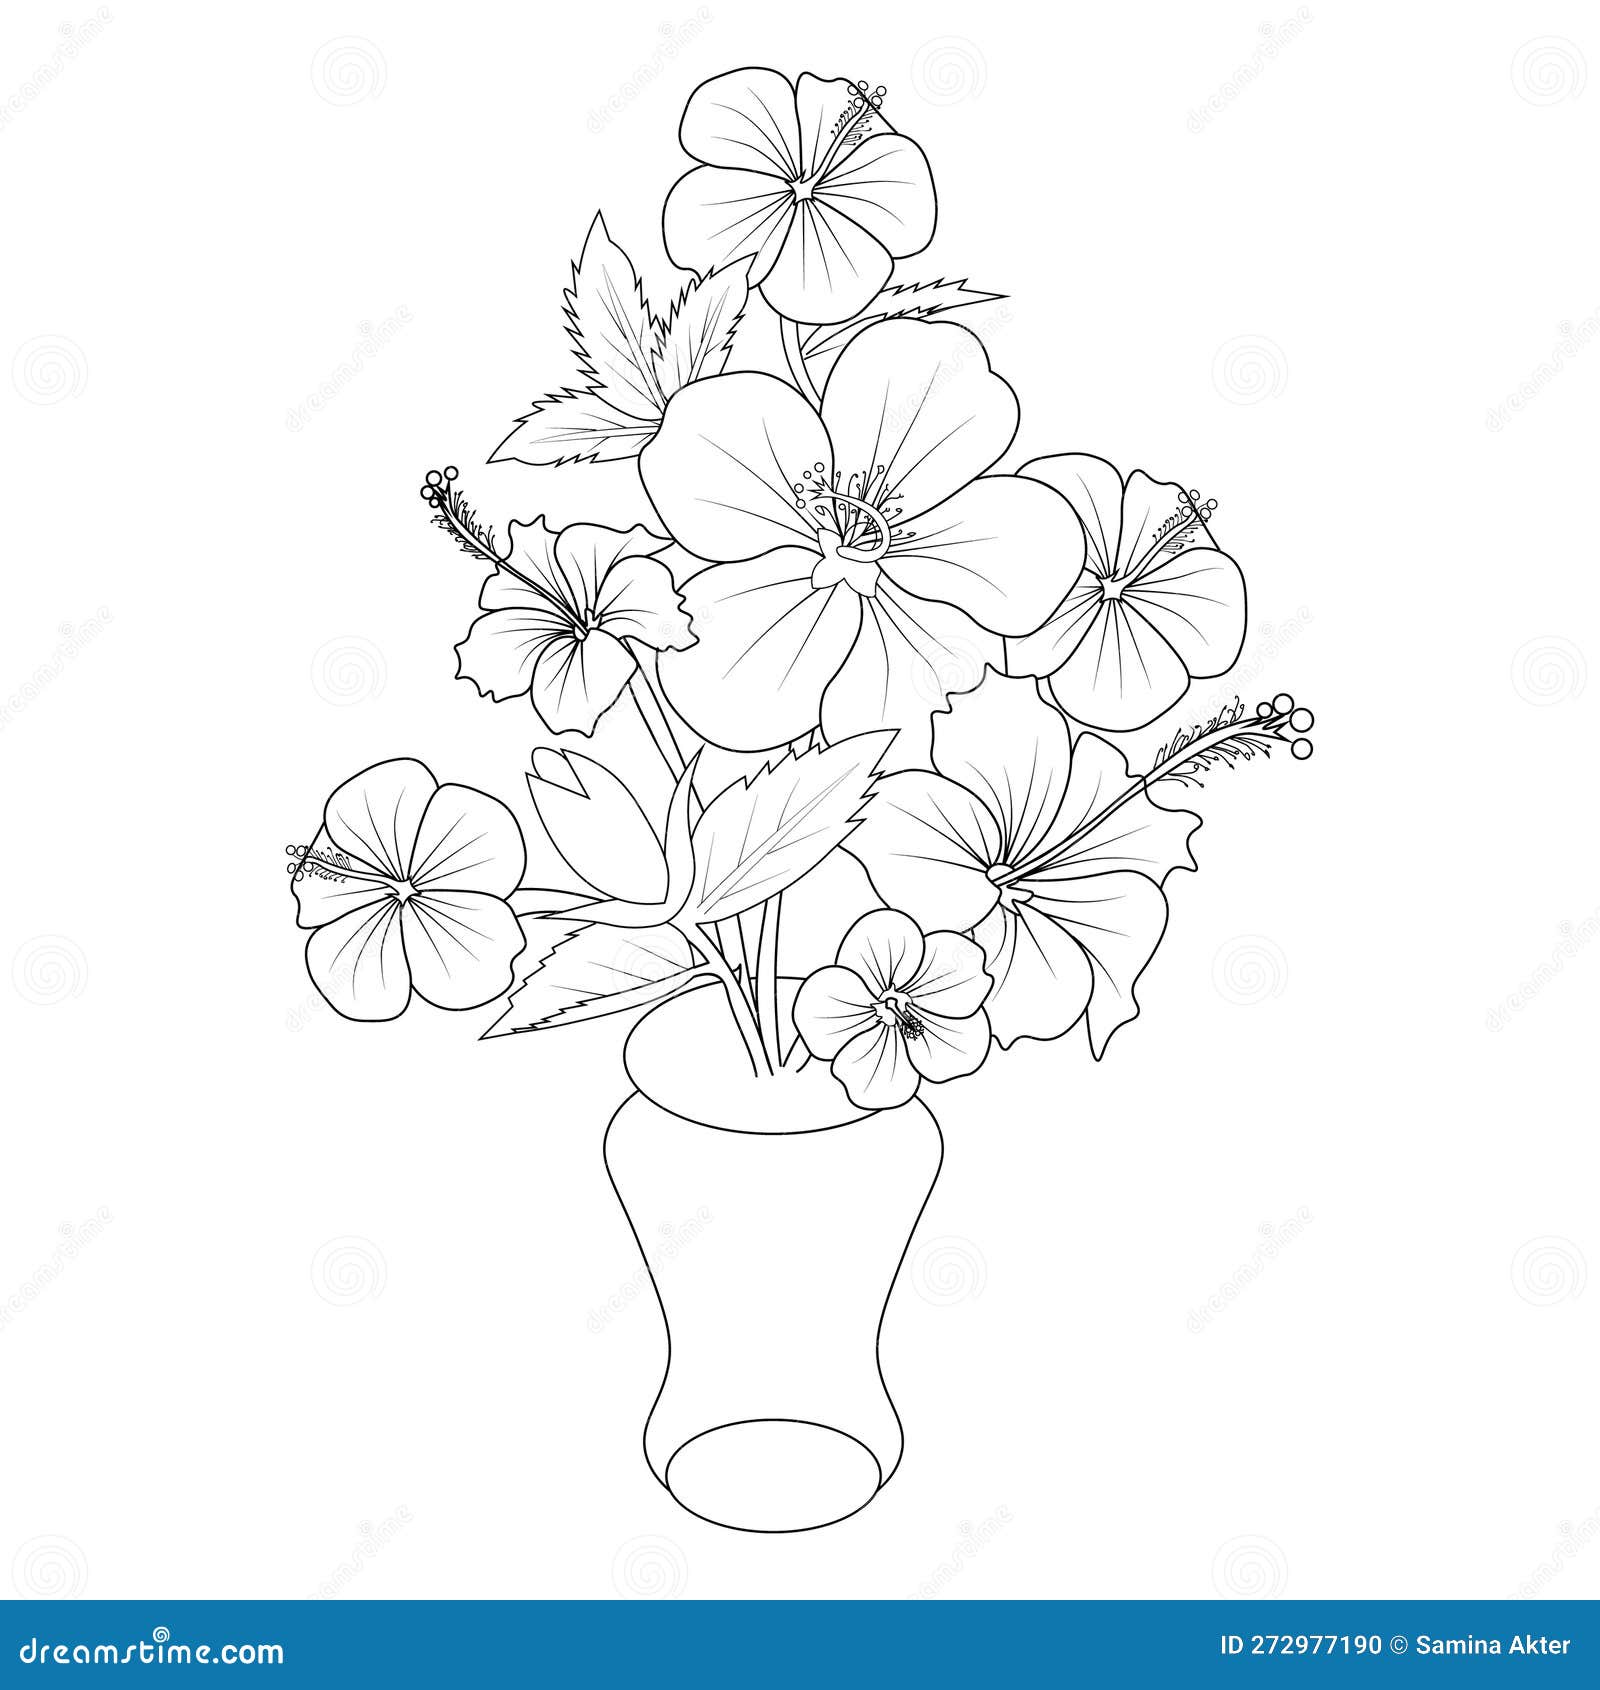 39 Easy Flowers To Draw Ideas → Tracesofmybody.com → Best Tattoo Ideas